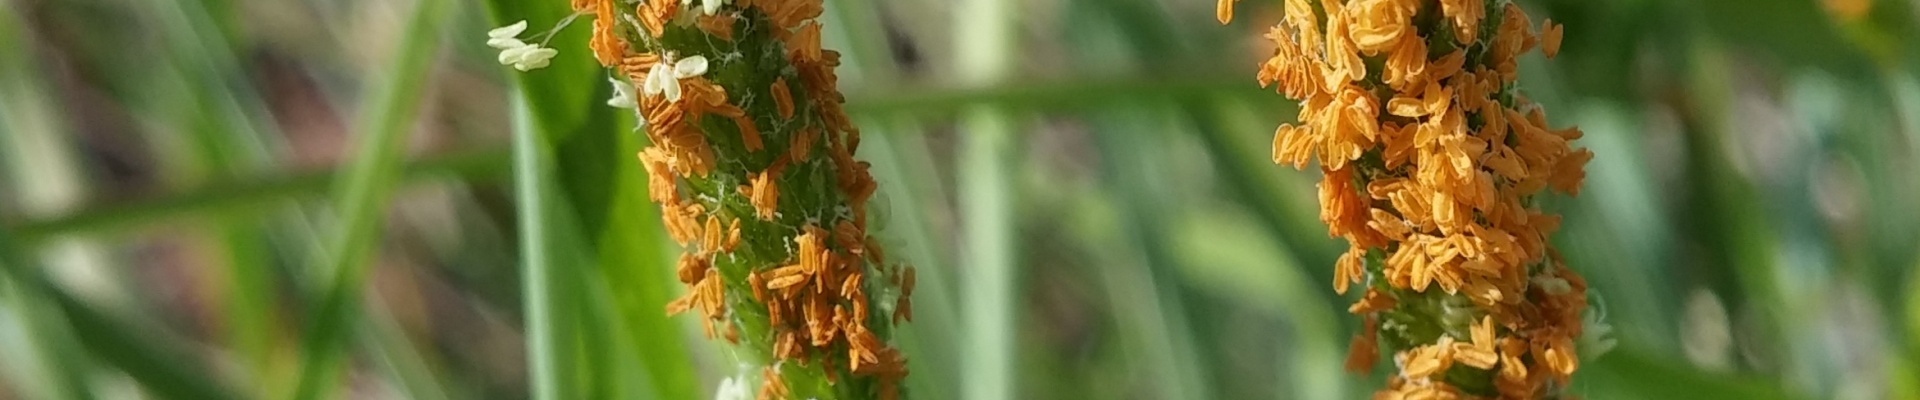 Czerwiec- wysokie stężenie pyłków traw